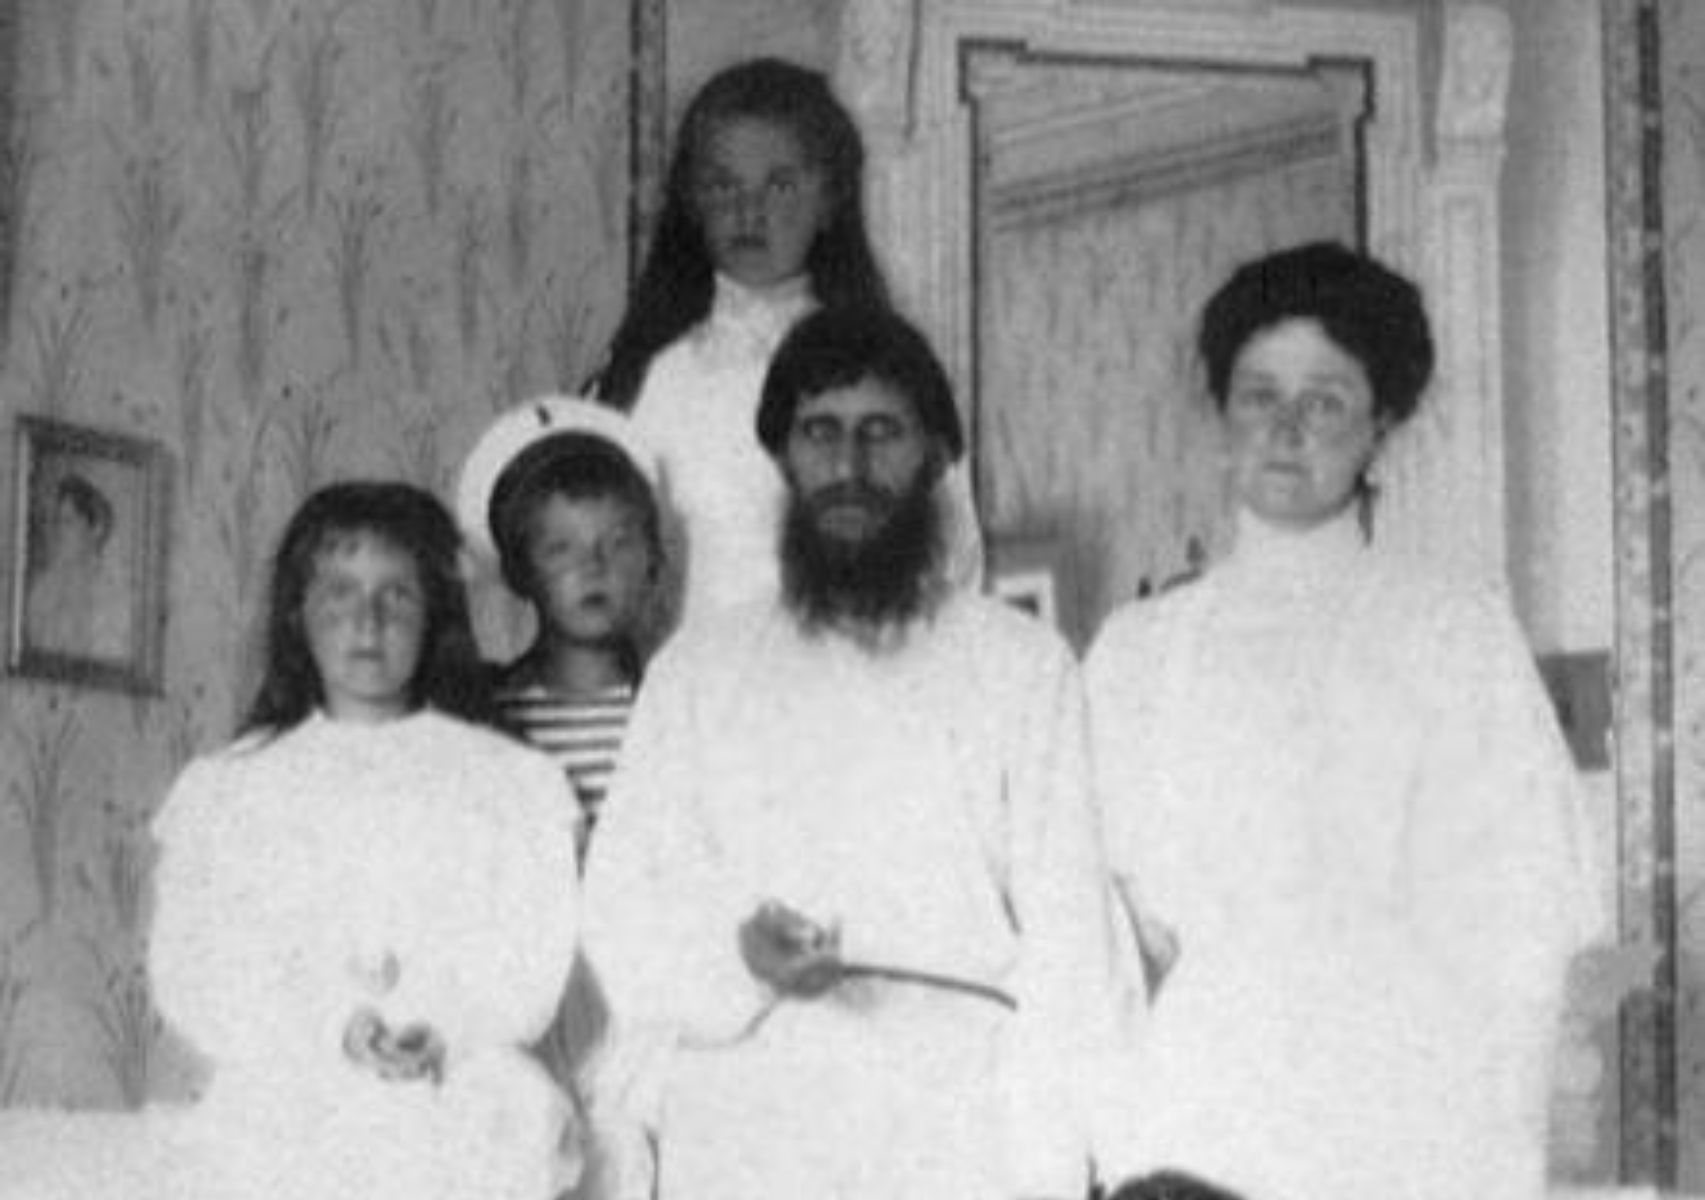 Grigori Rasputin: Ο βίος και η πολιτεία του διαβόητου καλόγερου που ξελόγιαζε τις γυναίκες